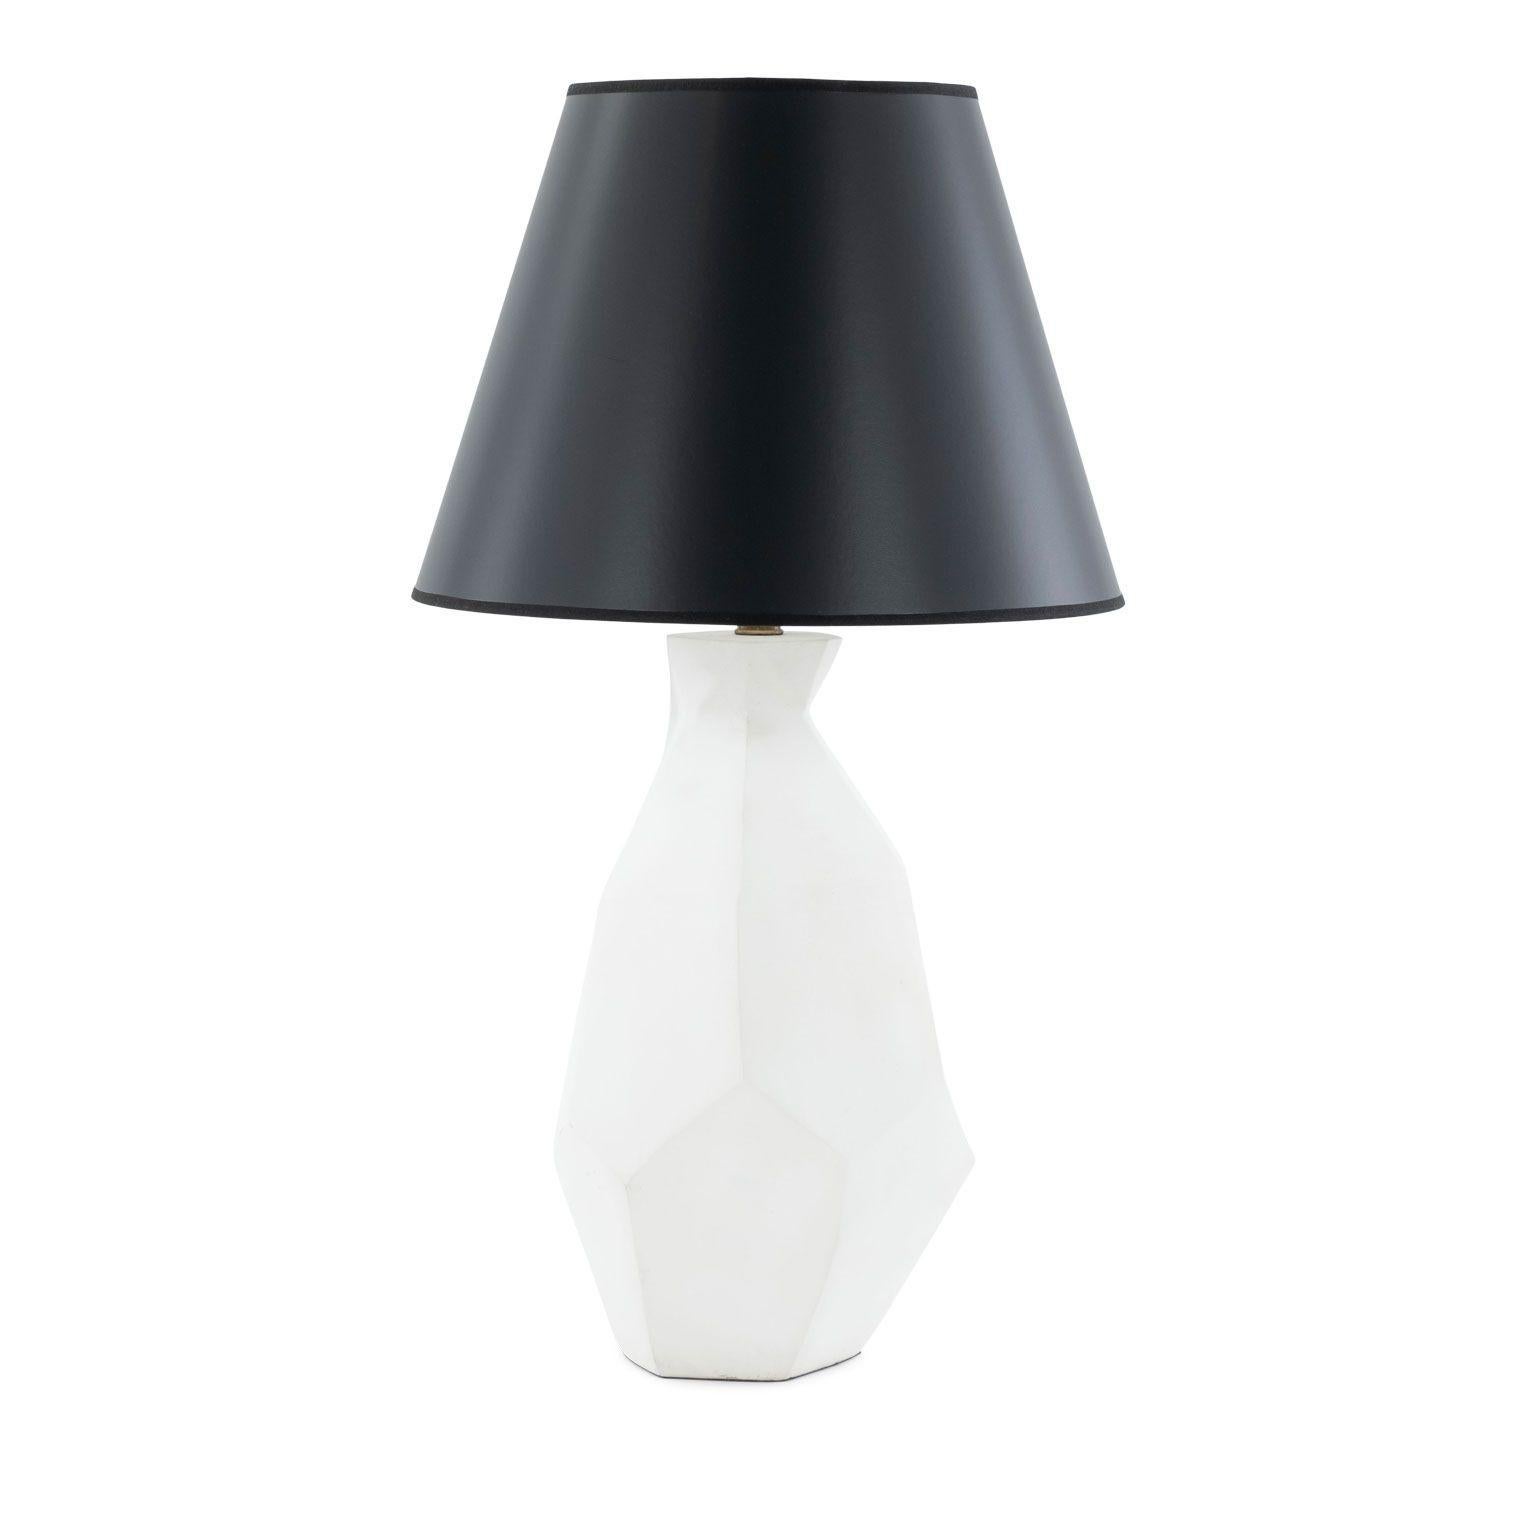 Weiße Gipslampe im Stil von Giacometti, von Liz Marsh, neu verkabelt für den Gebrauch in den USA mit UL-gelisteten Teilen. Inklusive Dimmschalter und ergänzendem schwarzen Papierschirm. Die angegebenen Maße umfassen den Schatten. Zwei Lampen sind